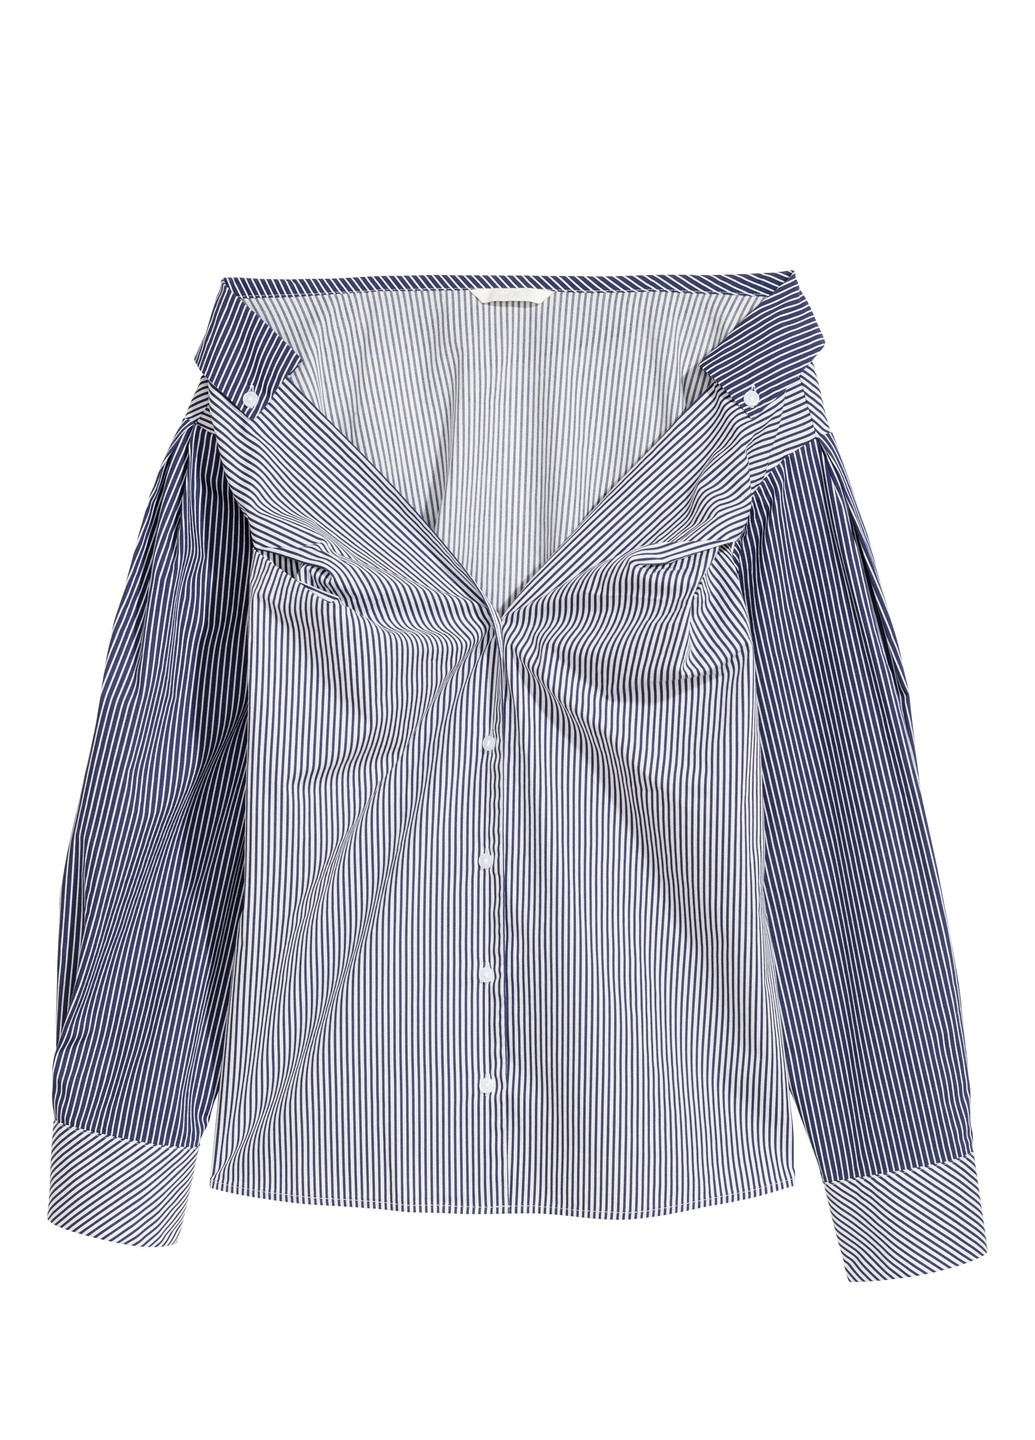 Синяя блуза демісезон,синій-білий в смужку, H&M